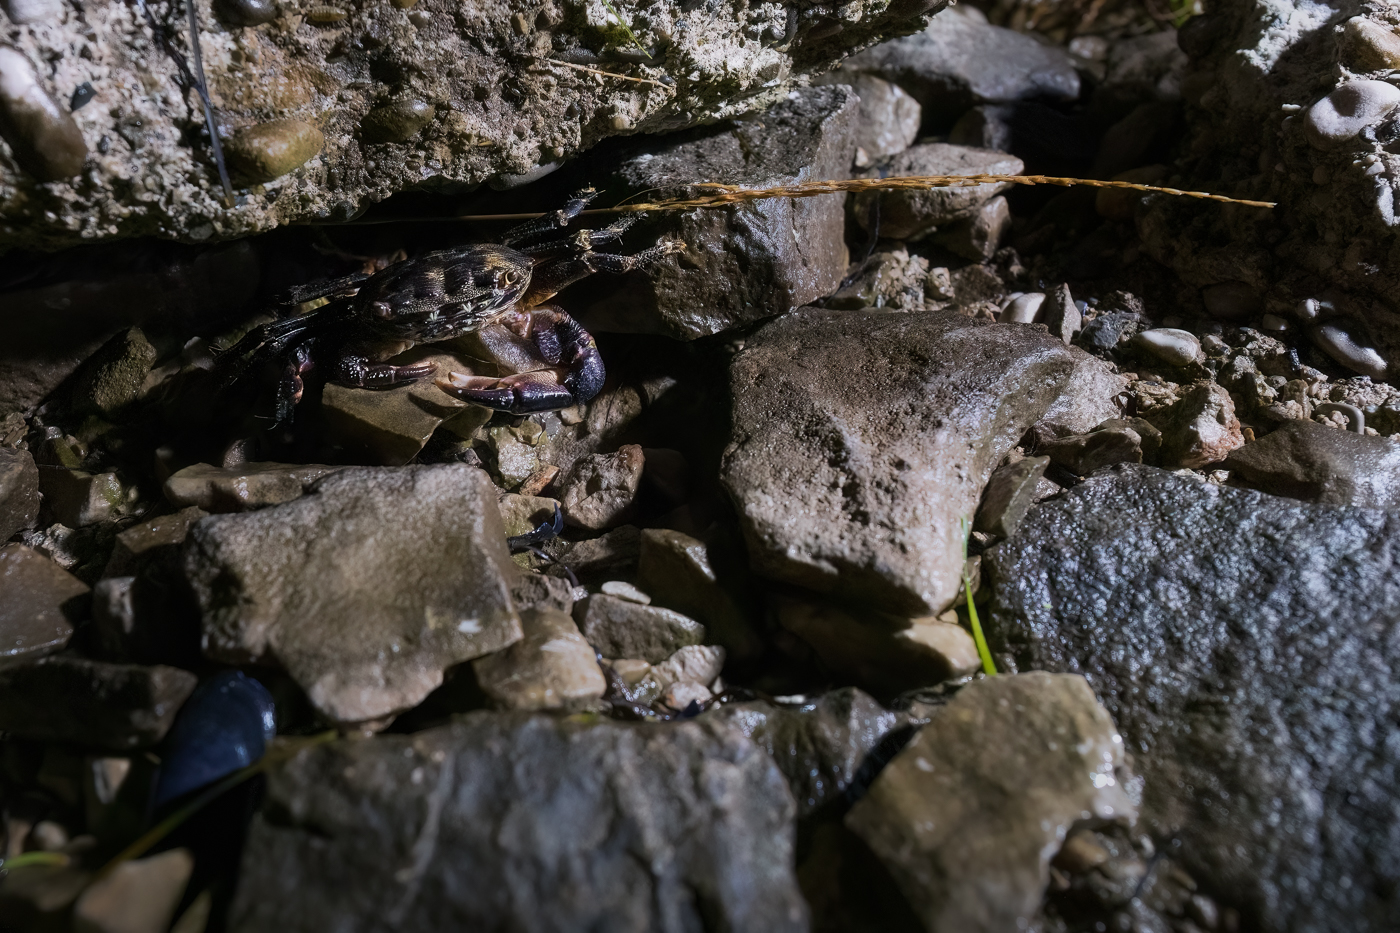 Lo sguardo del granchio corridore (Pachygrapsus marmoratus) fra timore e curiosità. Golfo di Trieste, Italia.